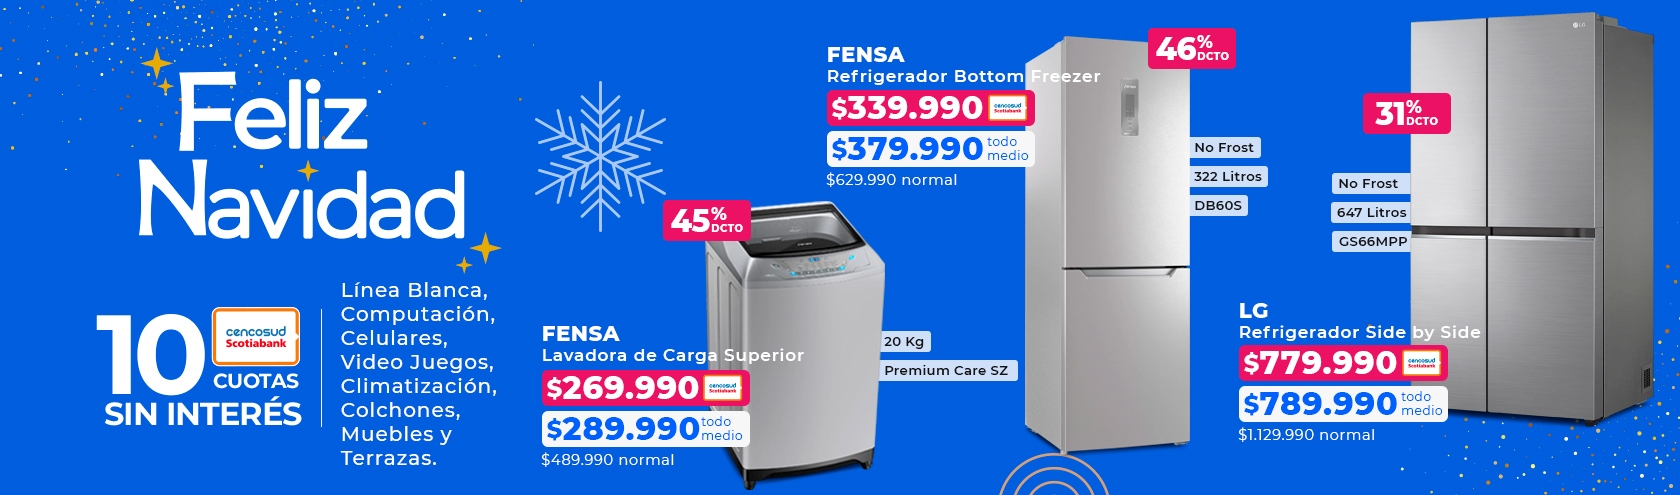 Ver ofertas en linea blanca refrigeradores y lavadoras en marcas LG y Electrolux